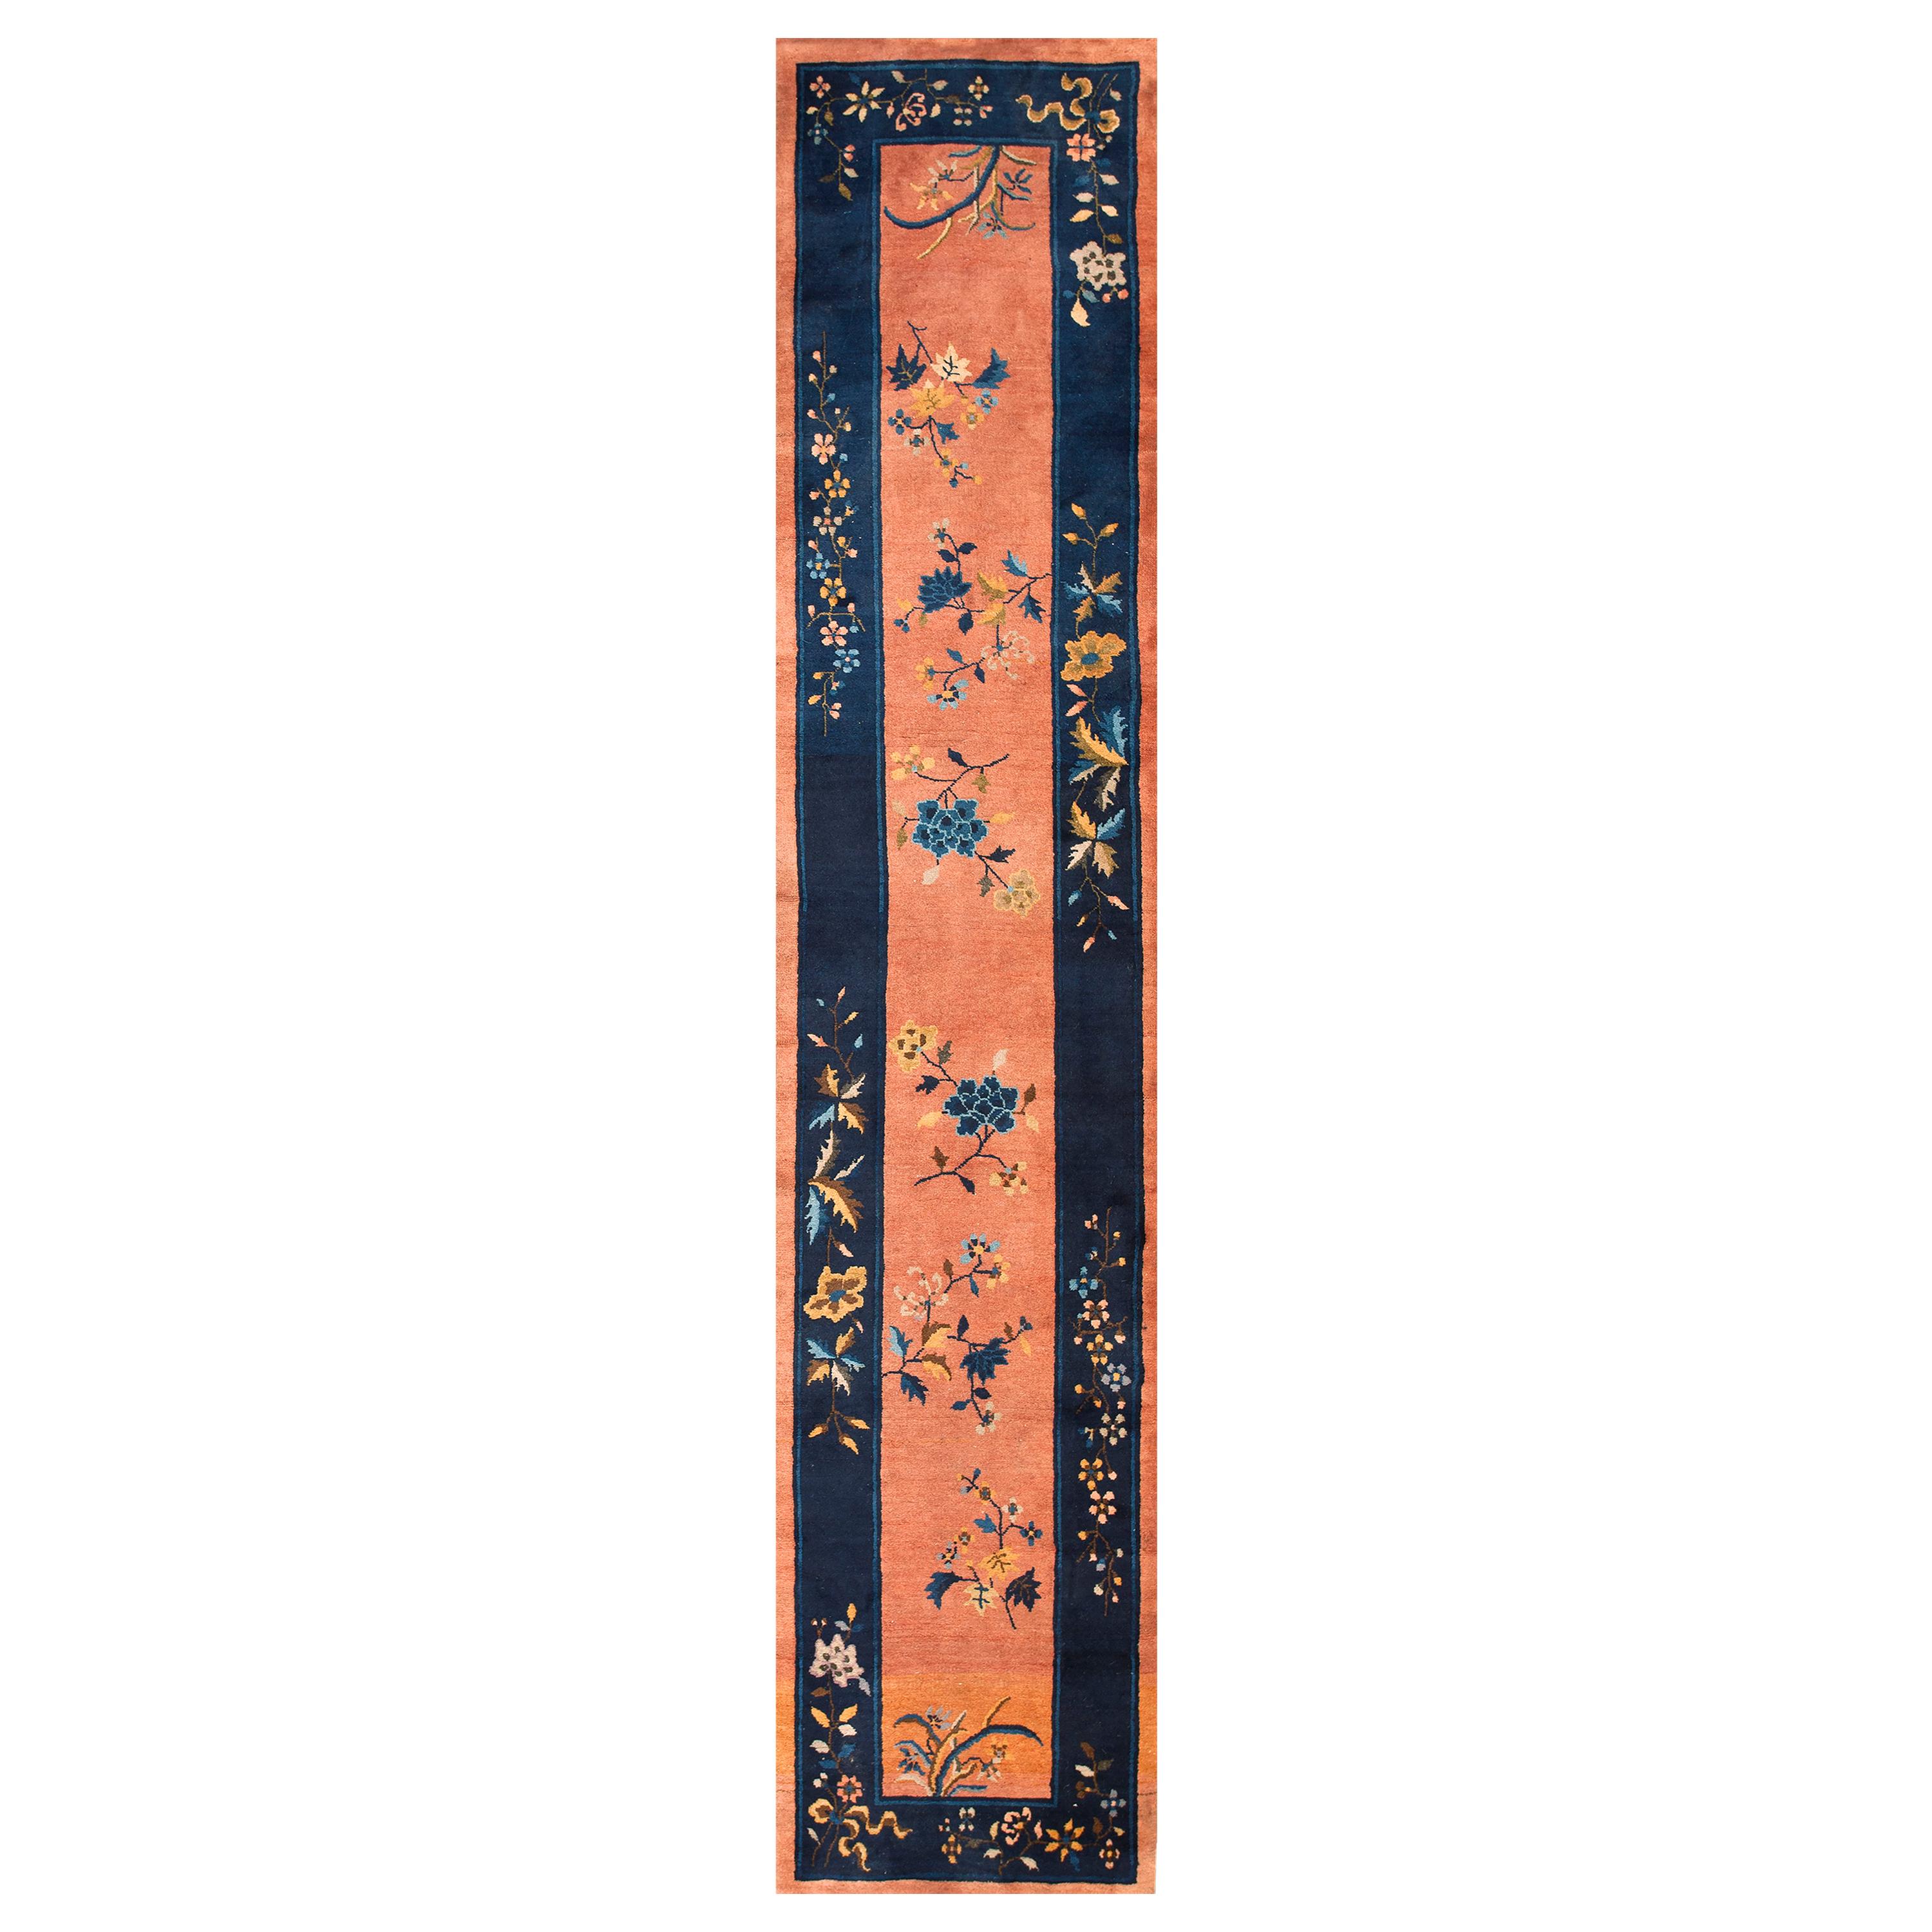 Chinesischer Art-Déco-Teppich aus den 1920er Jahren ( 2''6 x 11''9 - 76 x 358)